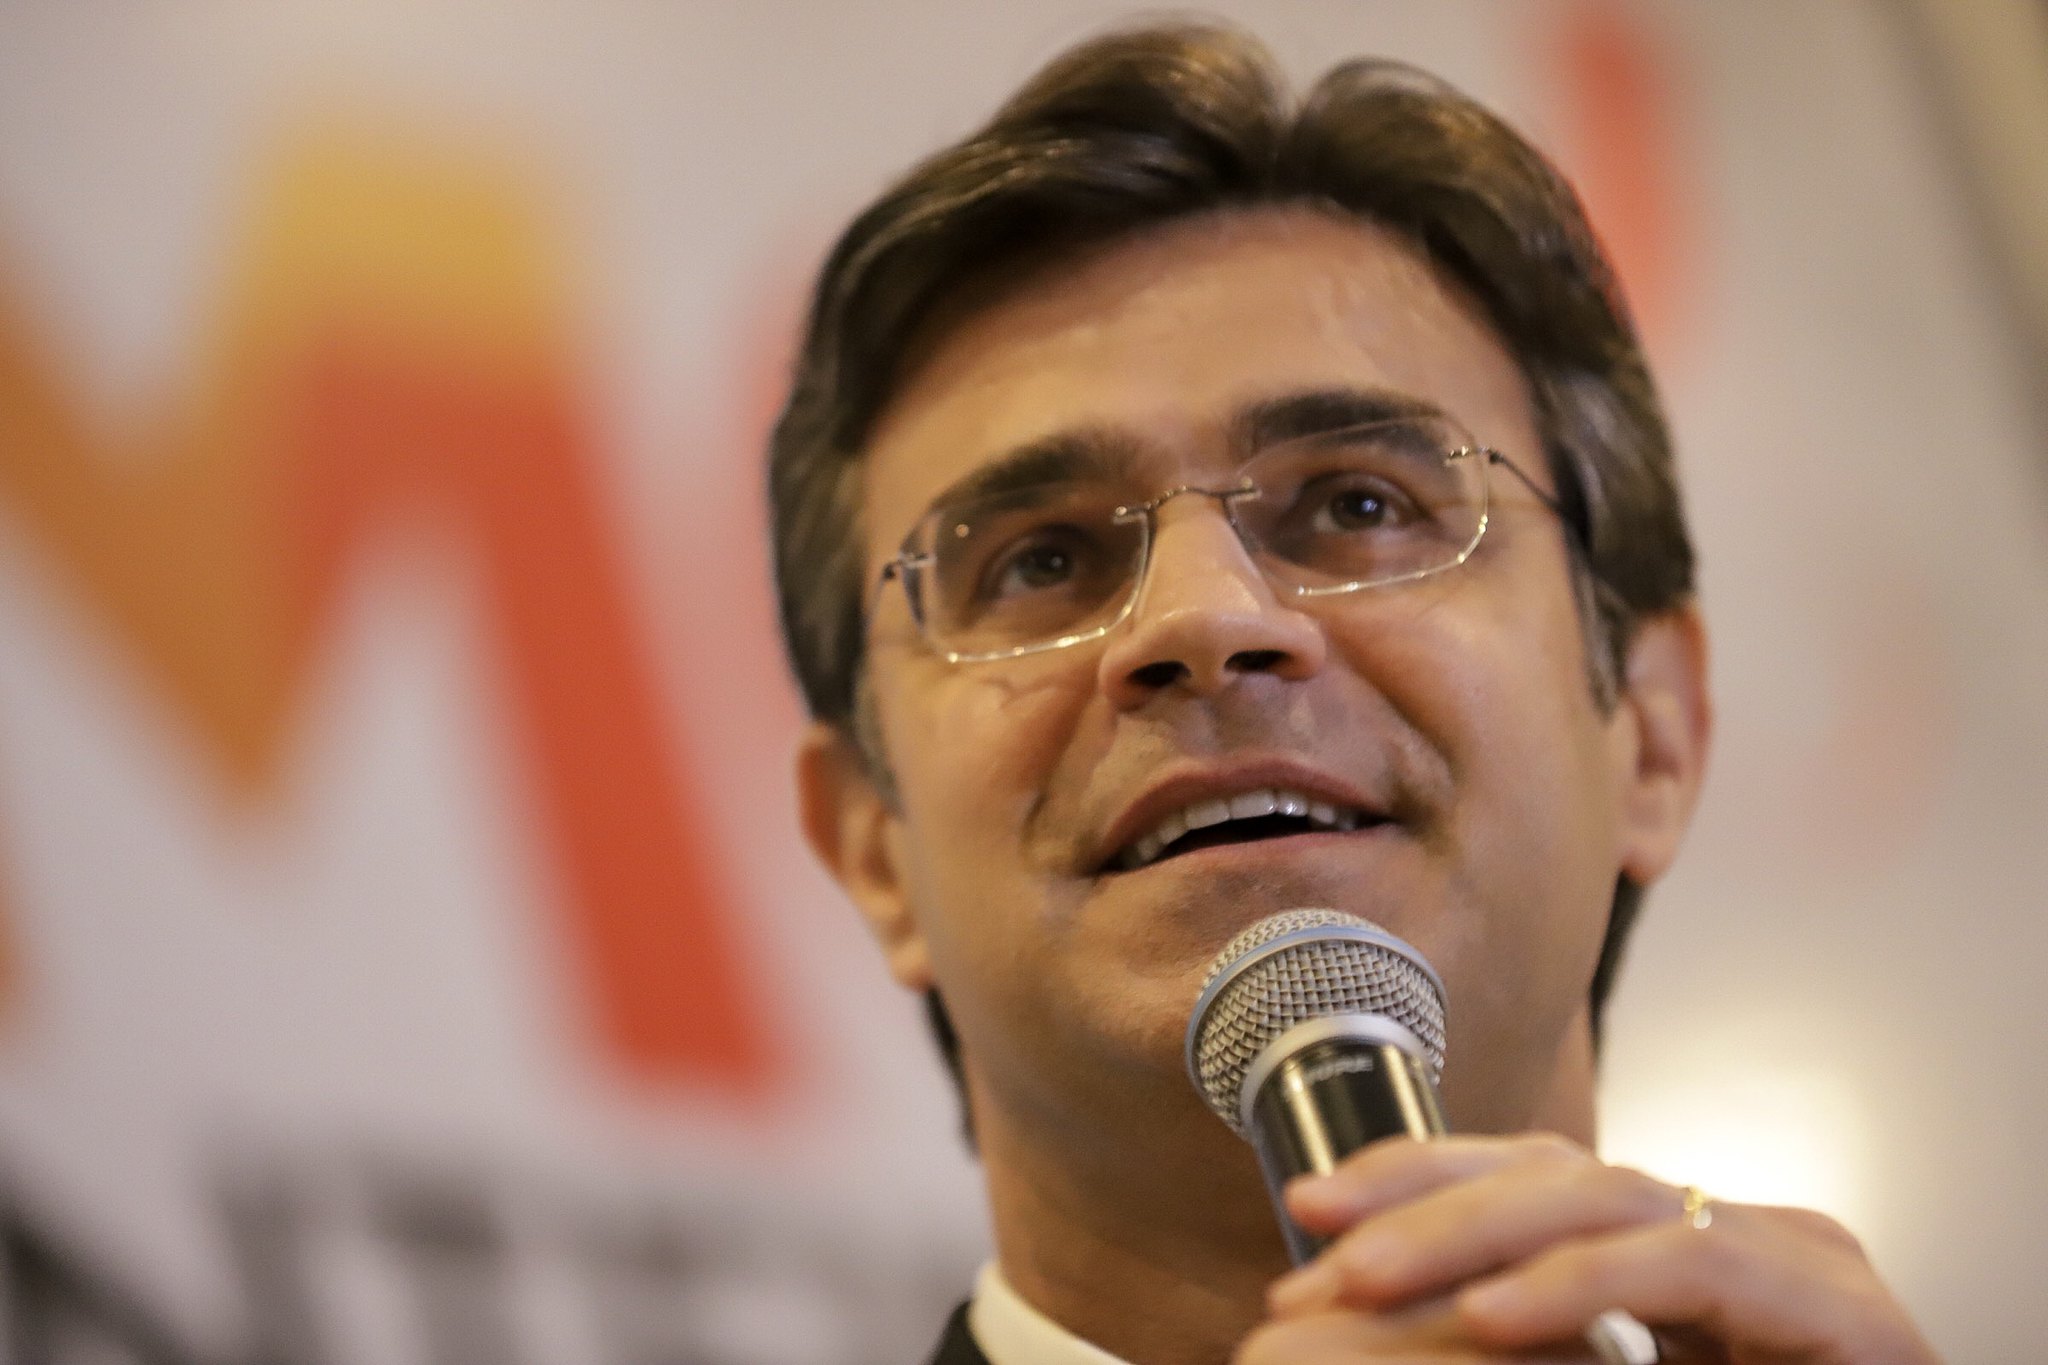 Saiba quem são os candidatos a governador de São Paulo